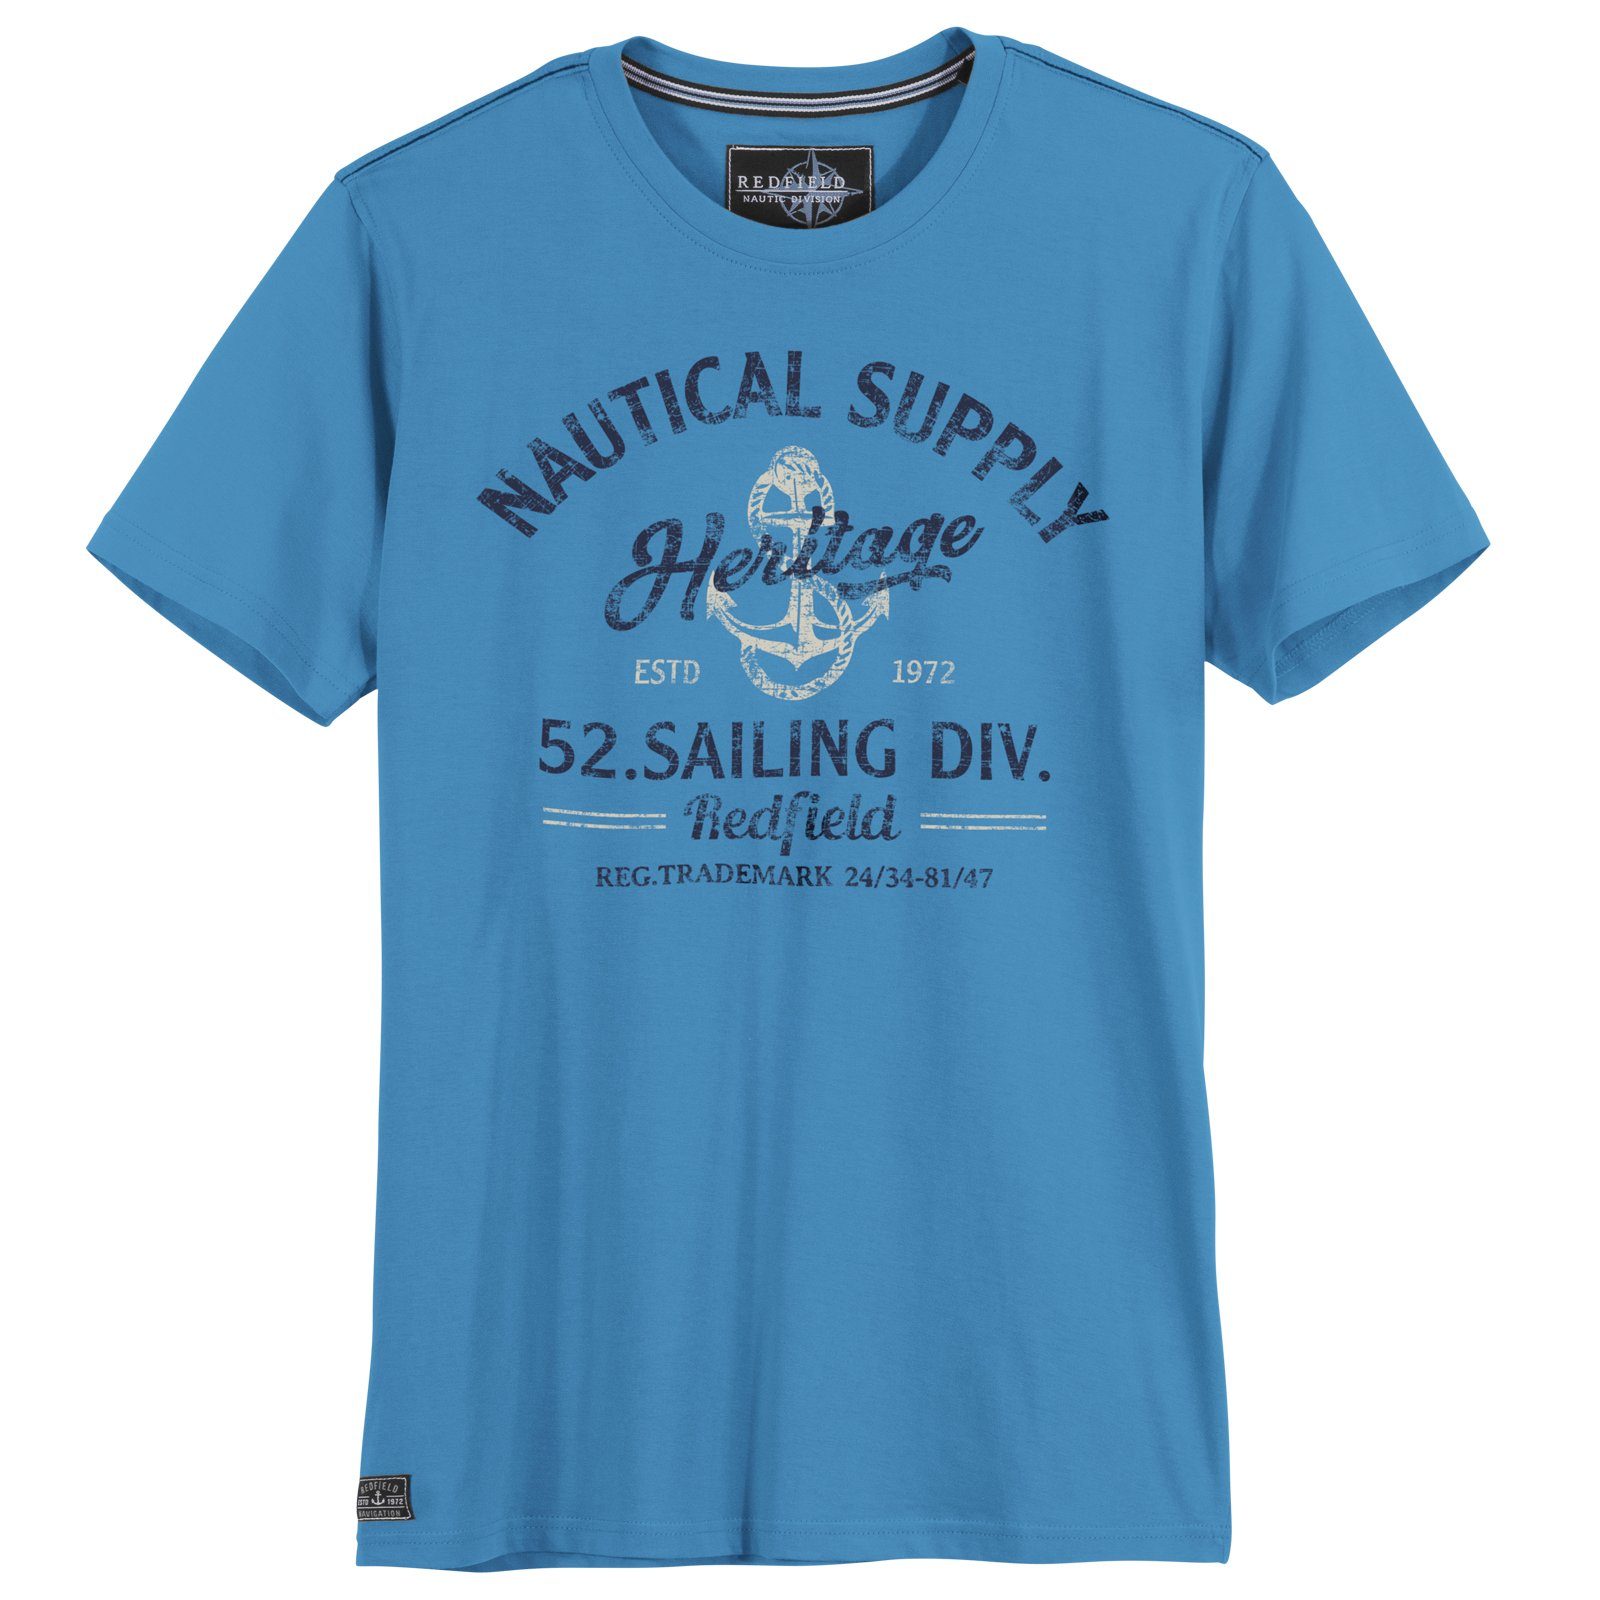 Redfield blau Größen Große Print-Shirt Supply Herren T-Shirt redfield Nautical